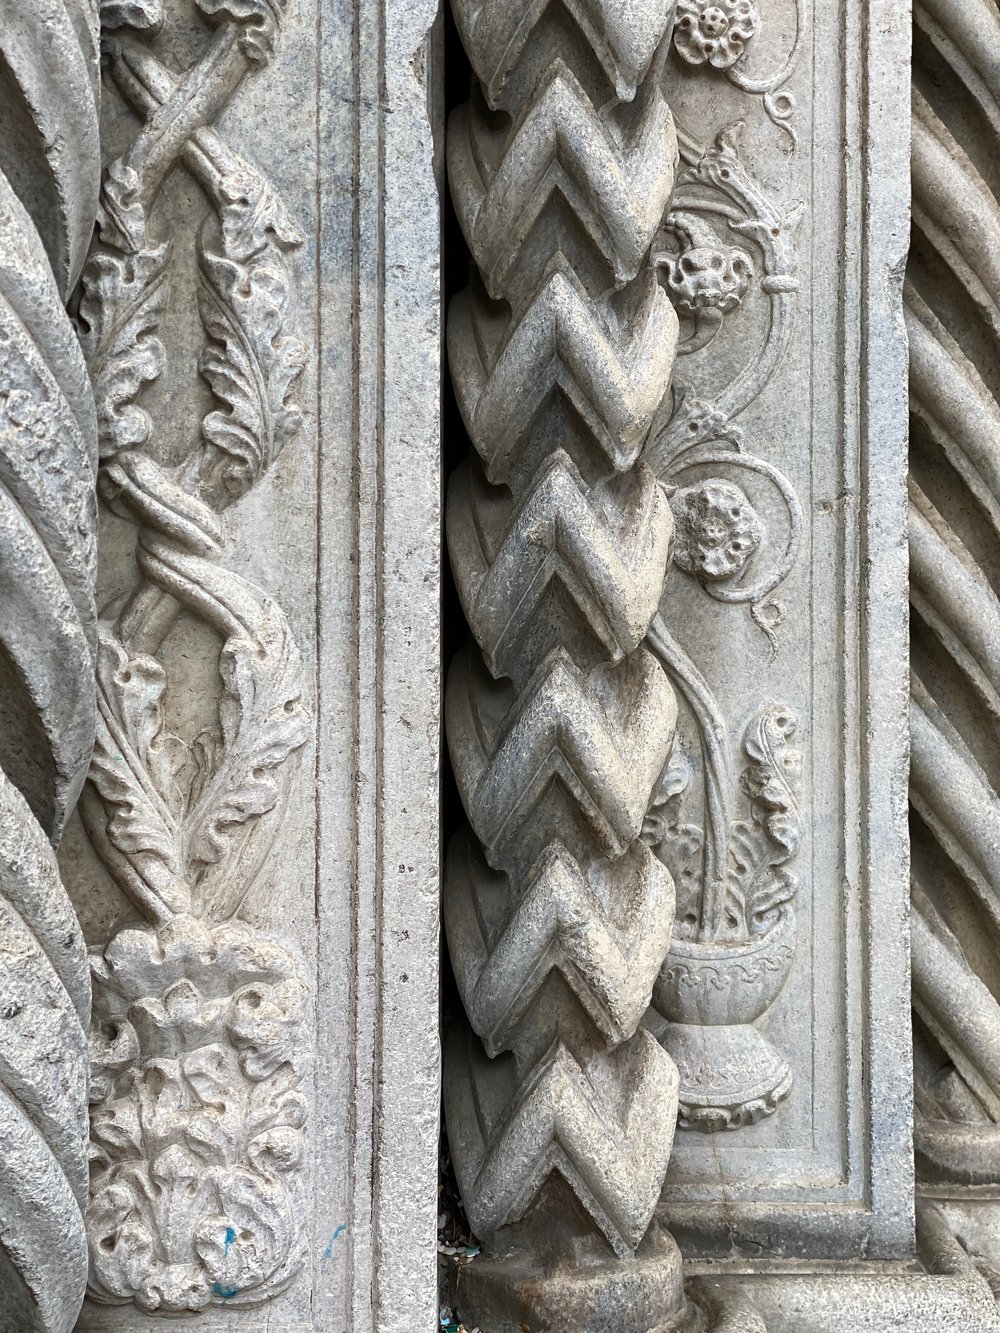 A detail of the Como Duomo